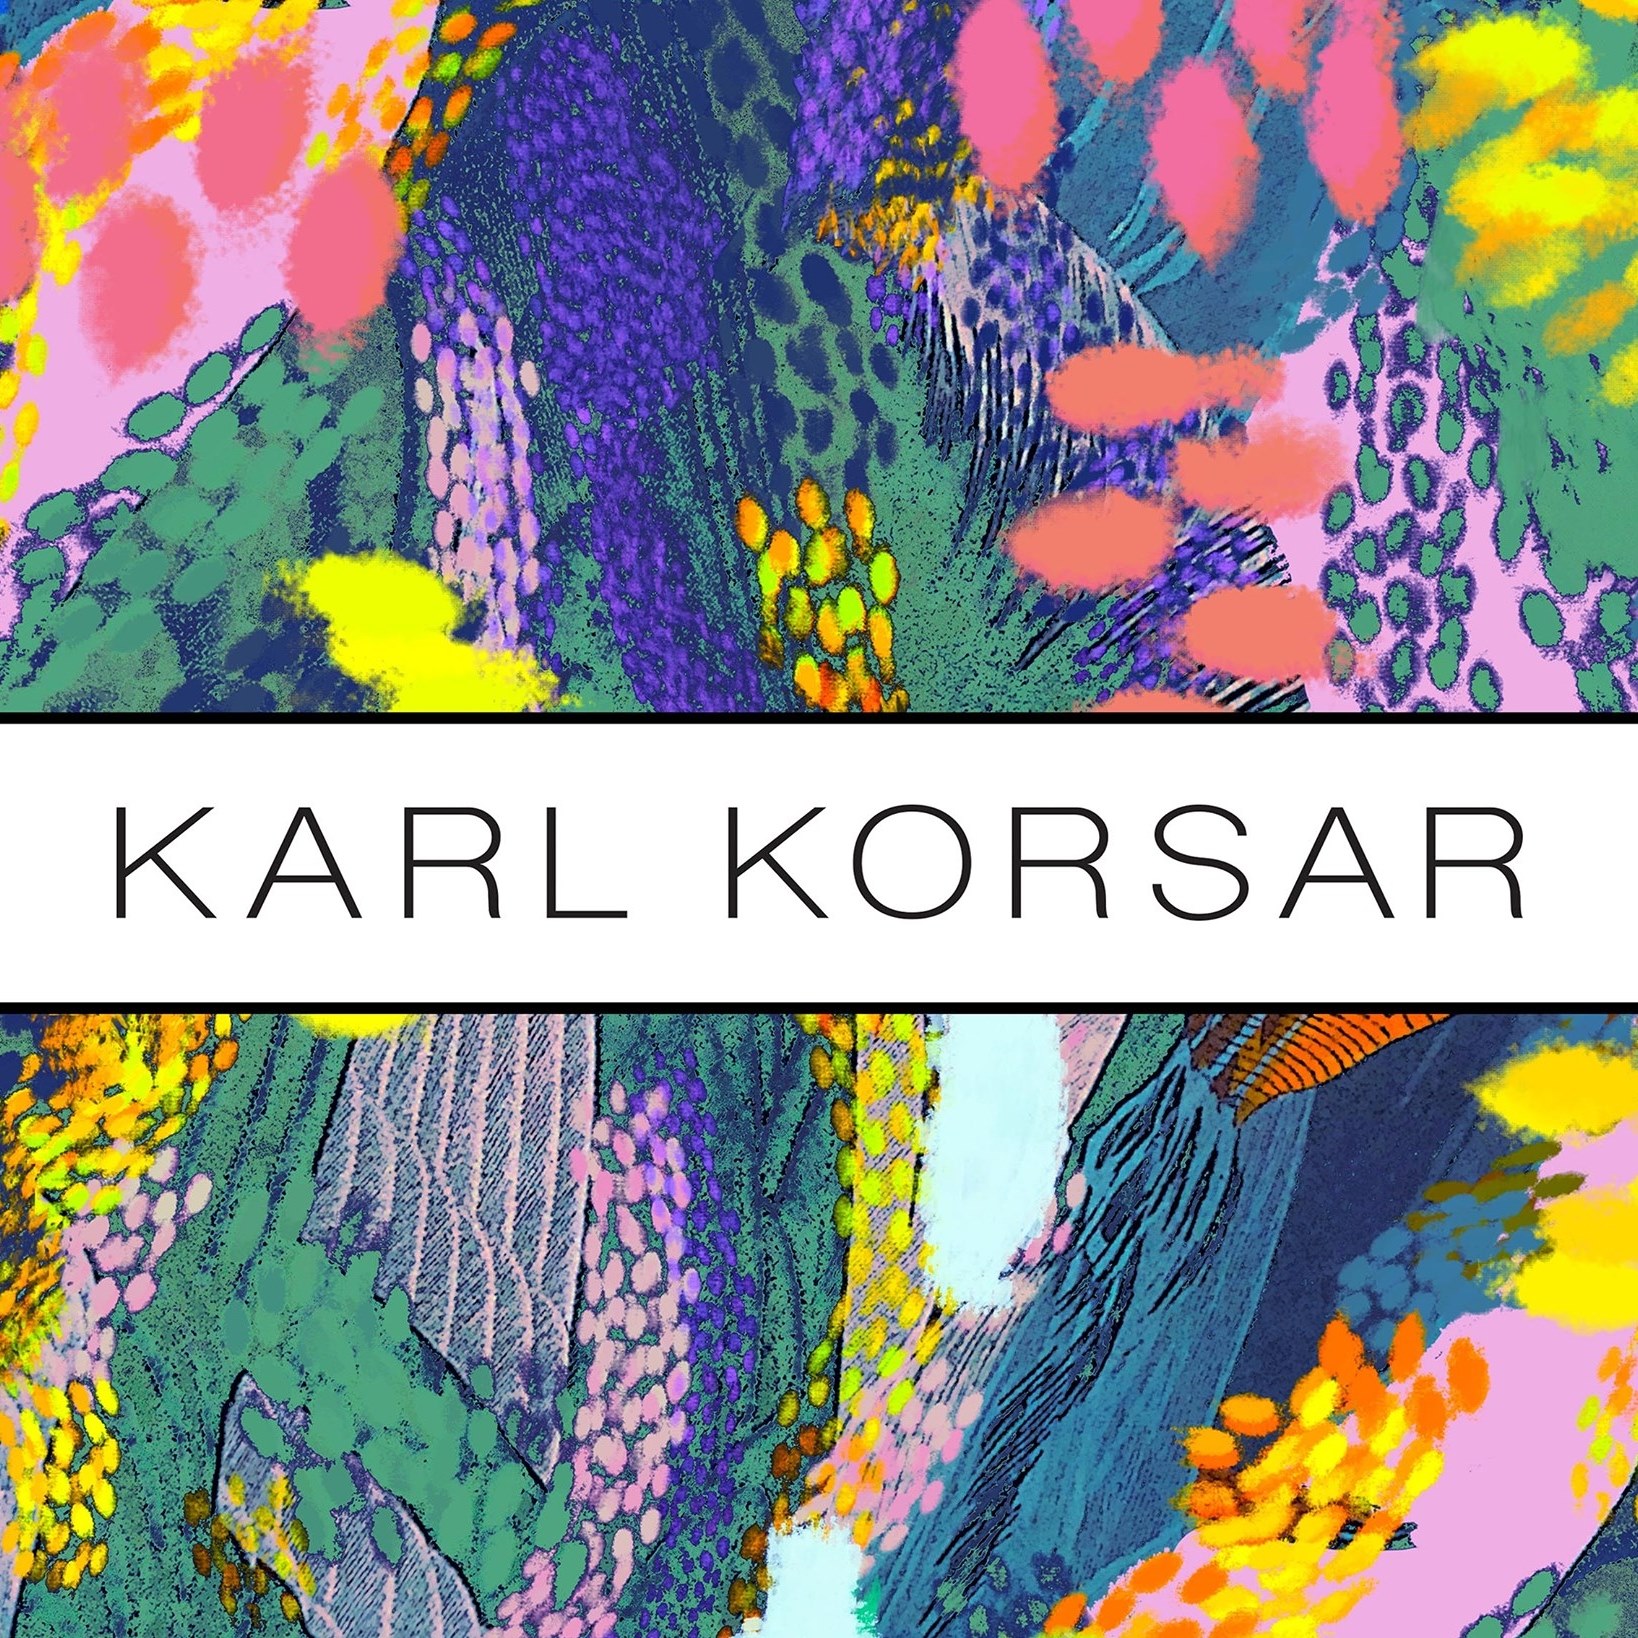 Karl Korsar